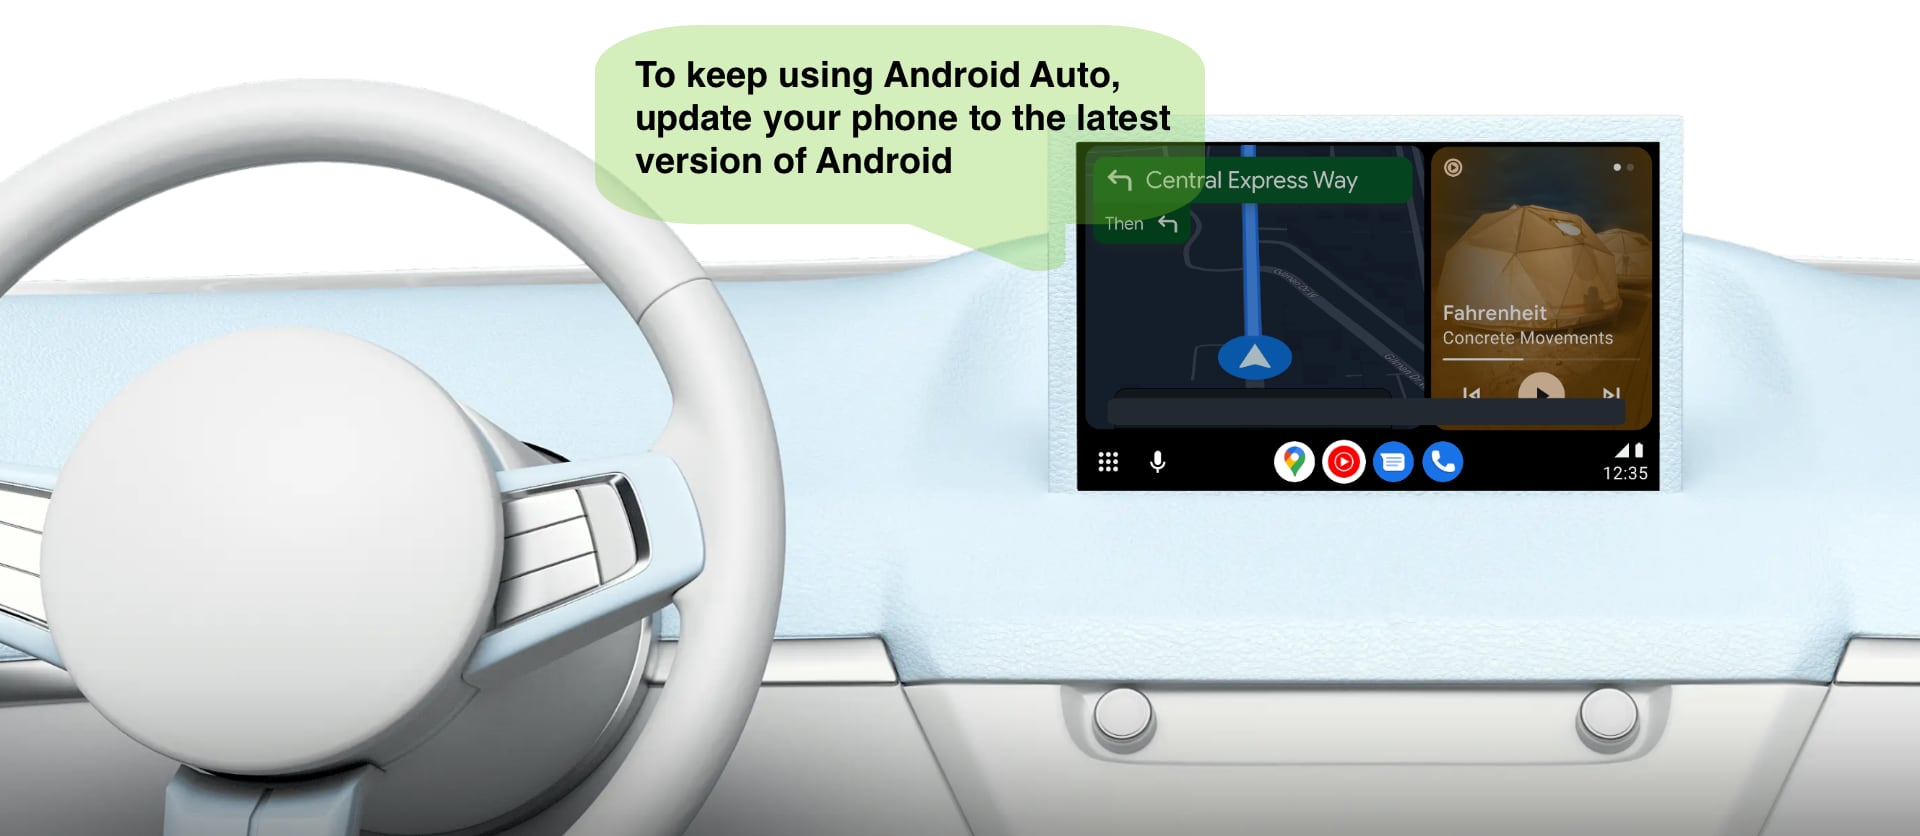 Android Auto wkrótce przestanie działać na starszych smartfonach z Androidem